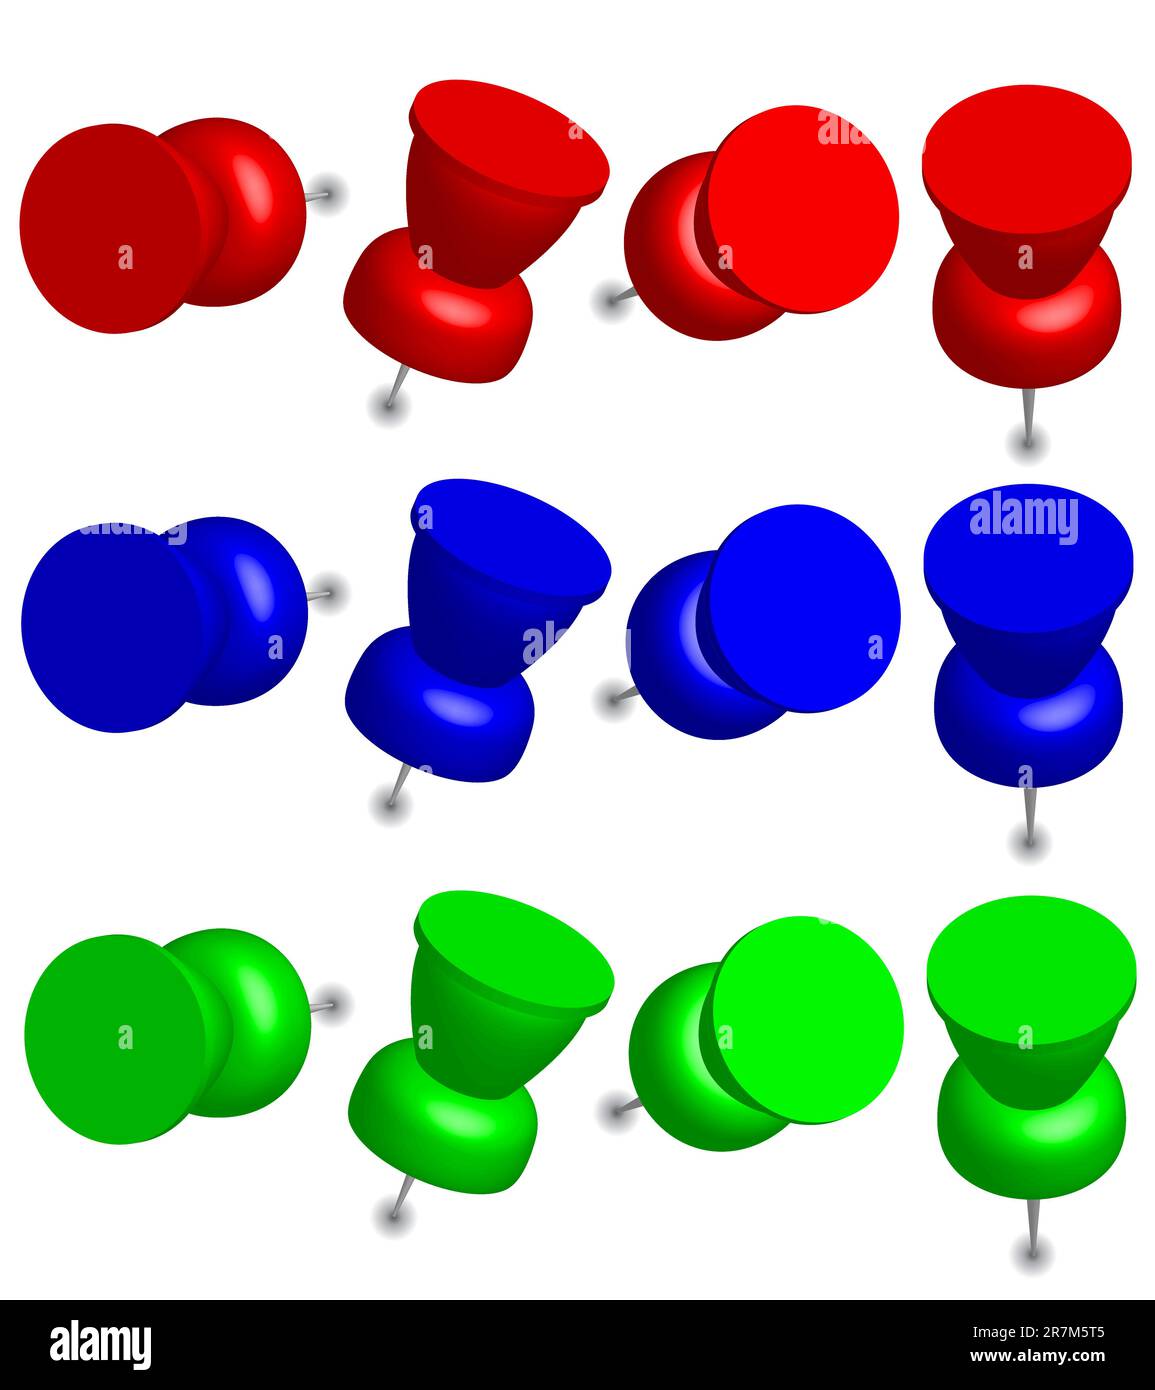 Illustrazione - Set di perni da ufficio nei colori rosso, verde e blu Illustrazione Vettoriale